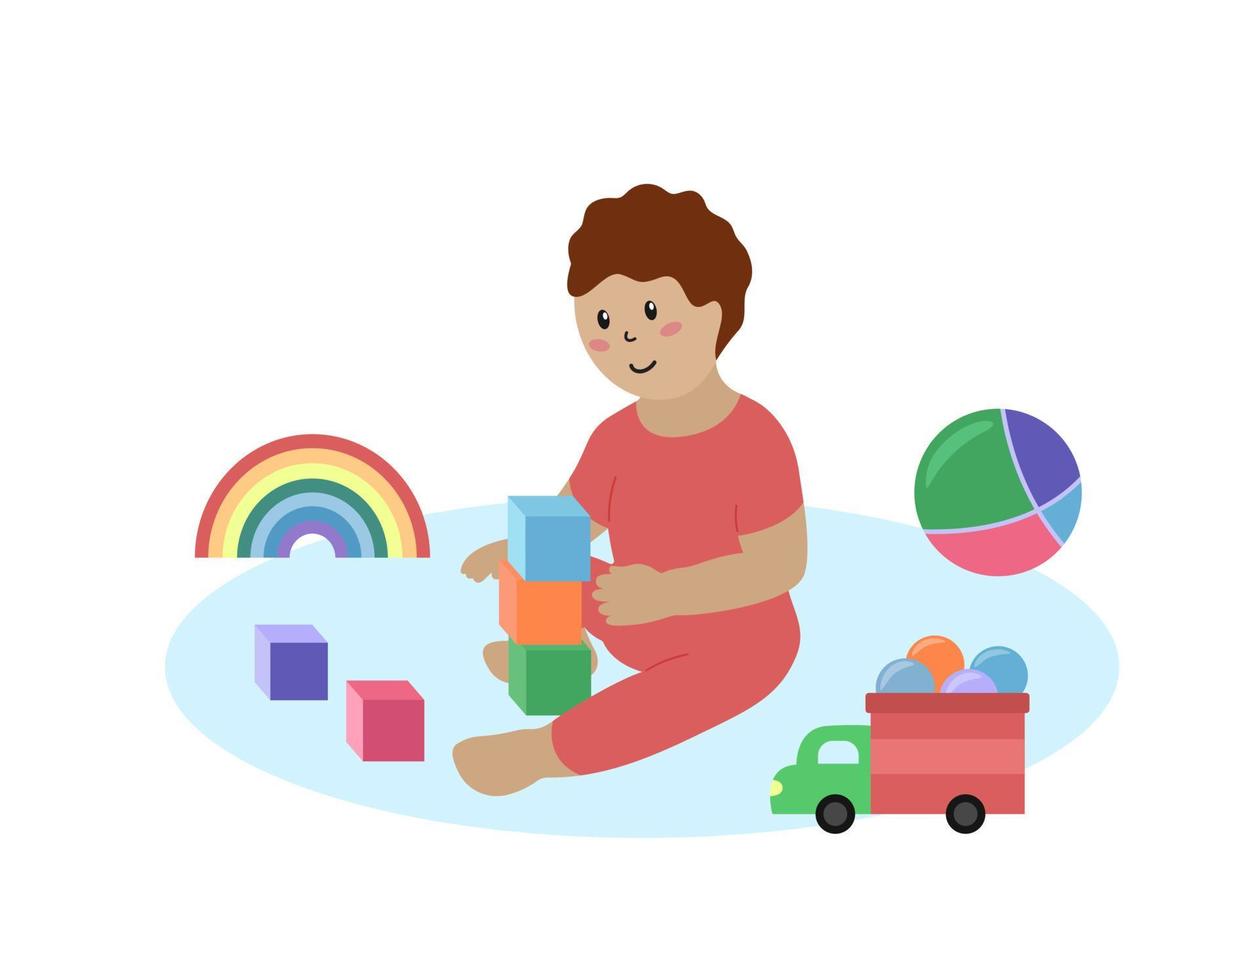 Baby spielt Spielzeug isoliert. glückliches kleinkindkind mit würfeln, auto, ball und anderen bunten spielzeugen. flache Vektorgrafik vektor